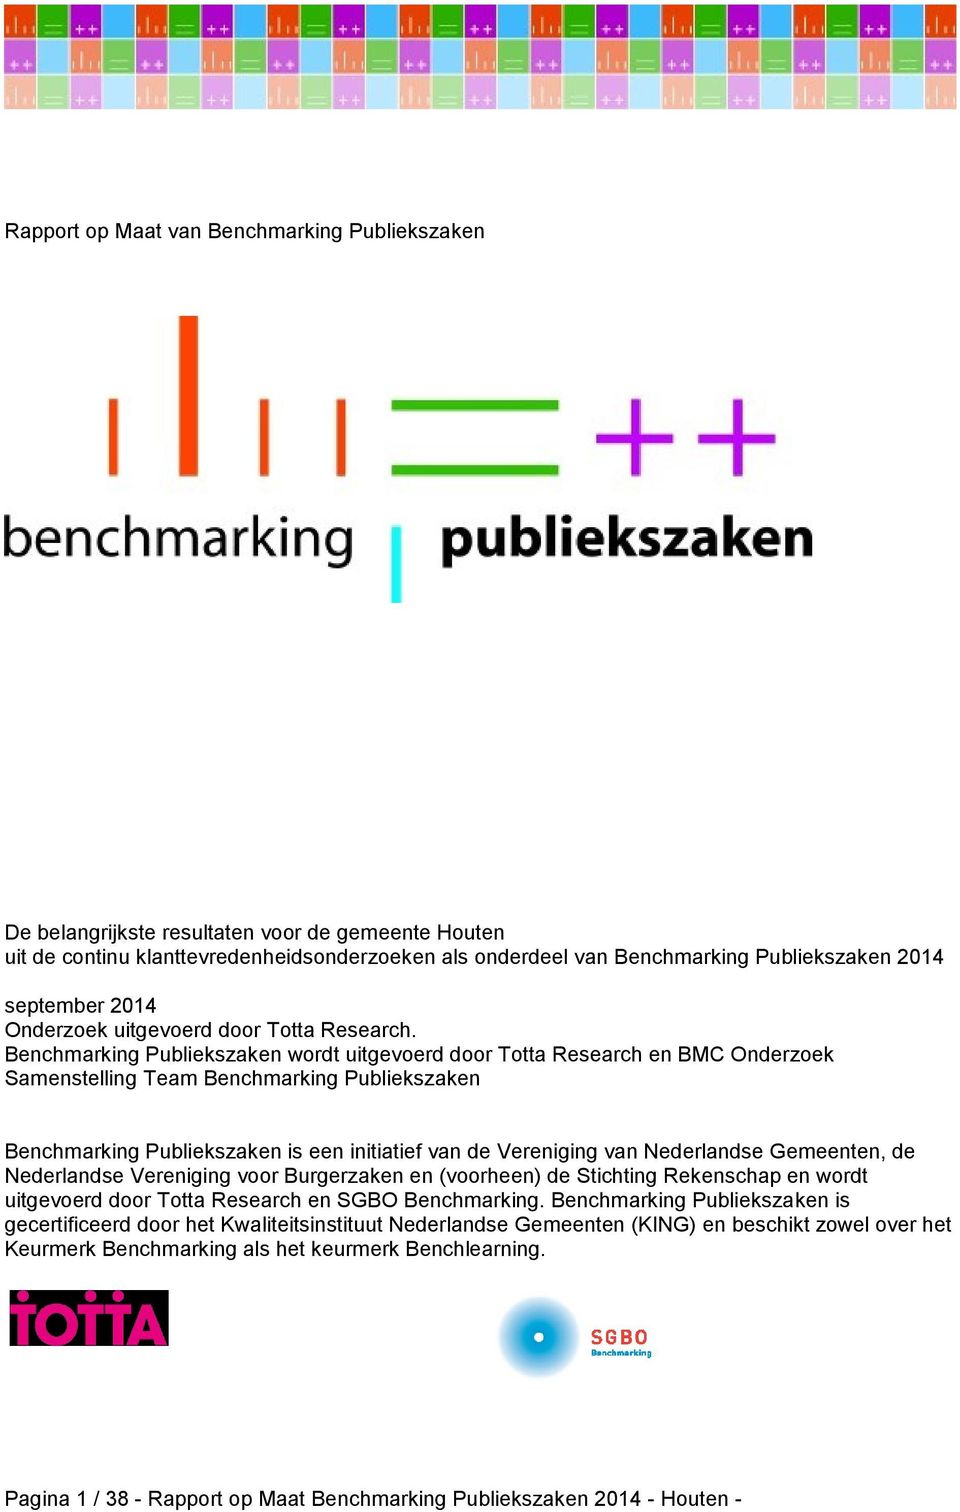 Benchmarking Publiekszaken wordt uitgevoerd door Totta Research en BMC Onderzoek Samenstelling Team Benchmarking Publiekszaken Benchmarking Publiekszaken is een initiatief van de Vereniging van